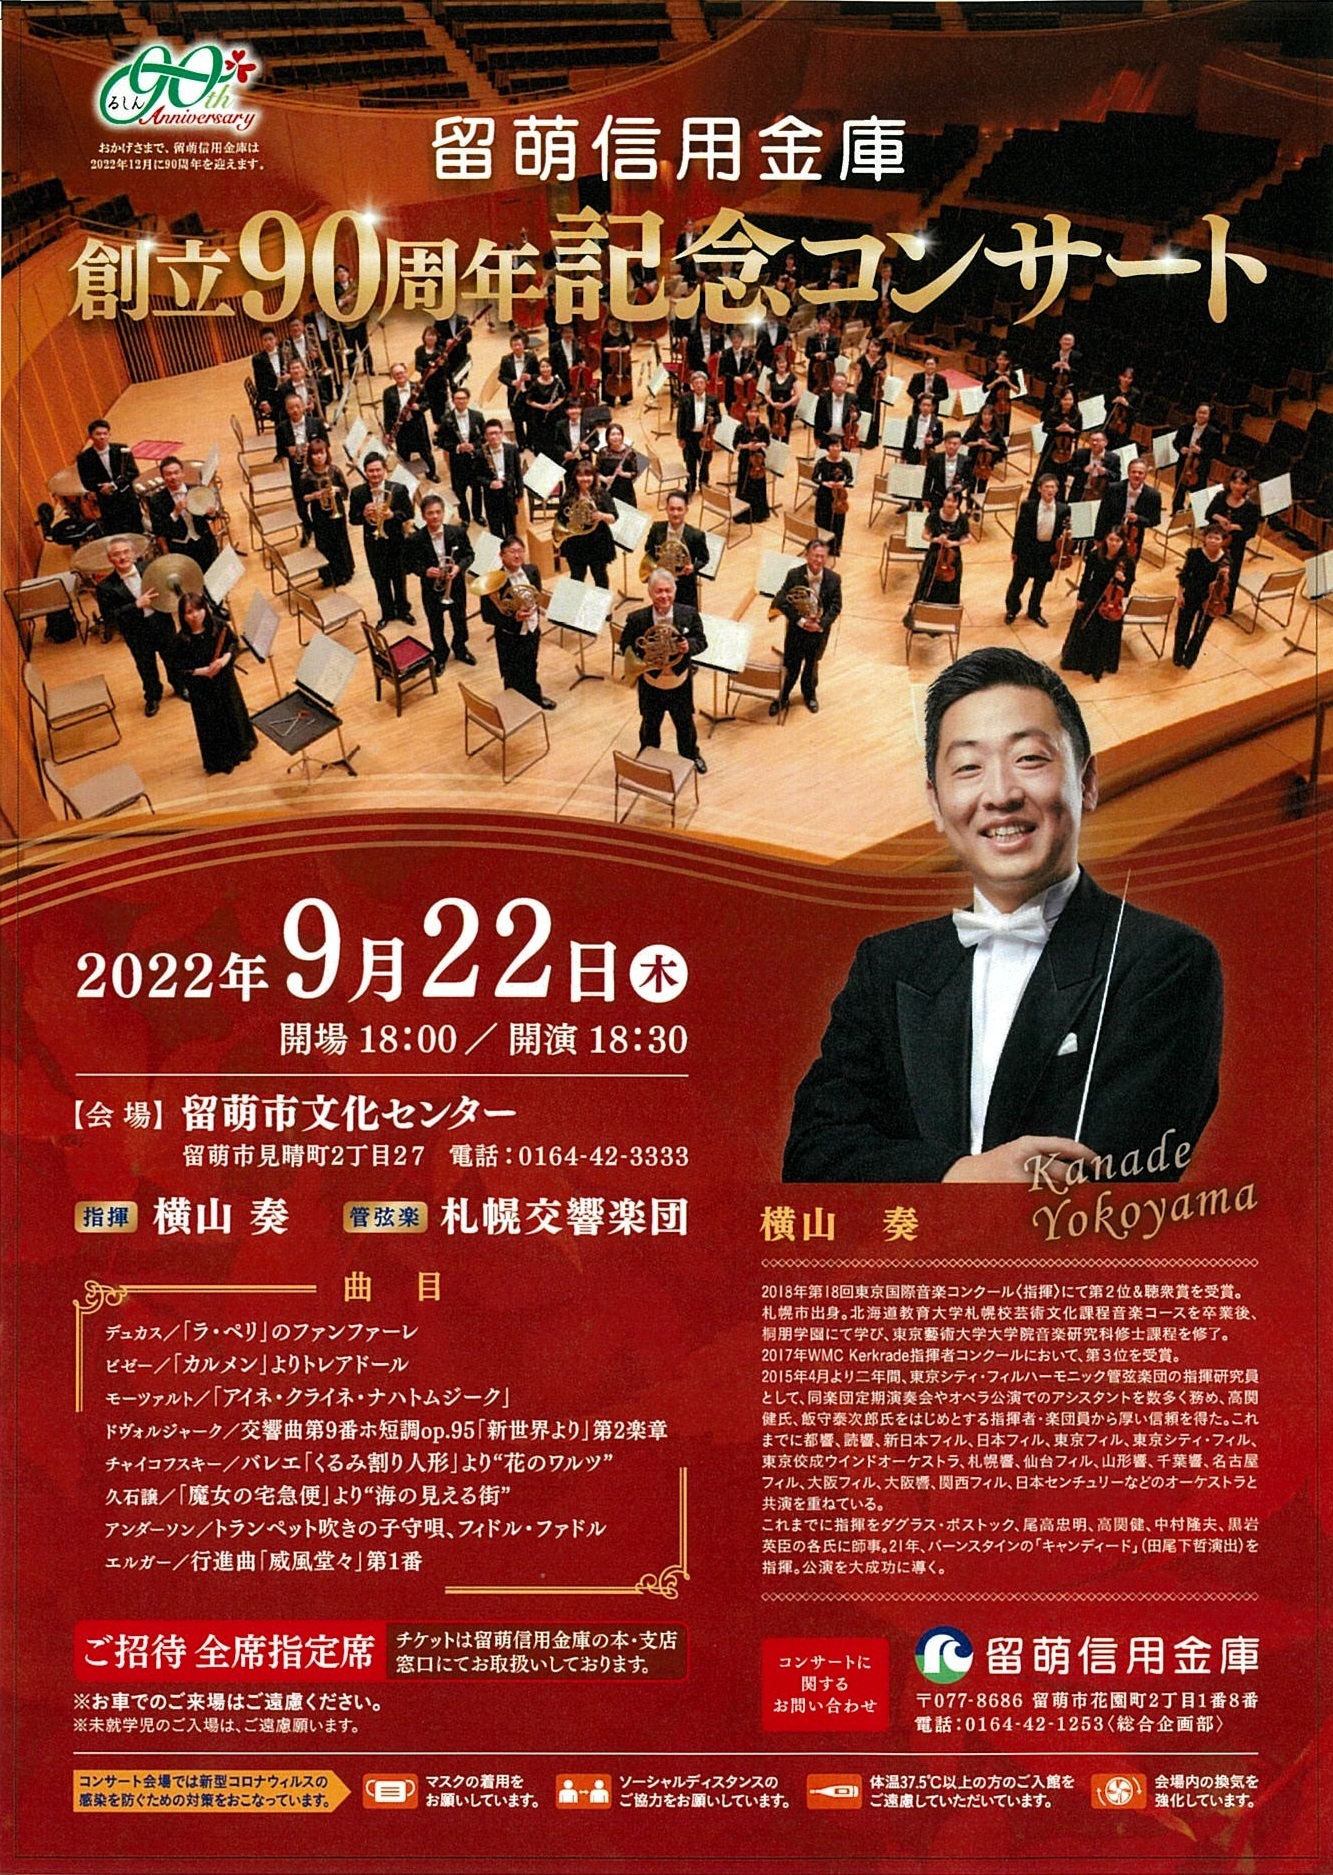 留萌信用金庫 創立90周年記念コンサート | 札幌交響楽団 Sapporo 